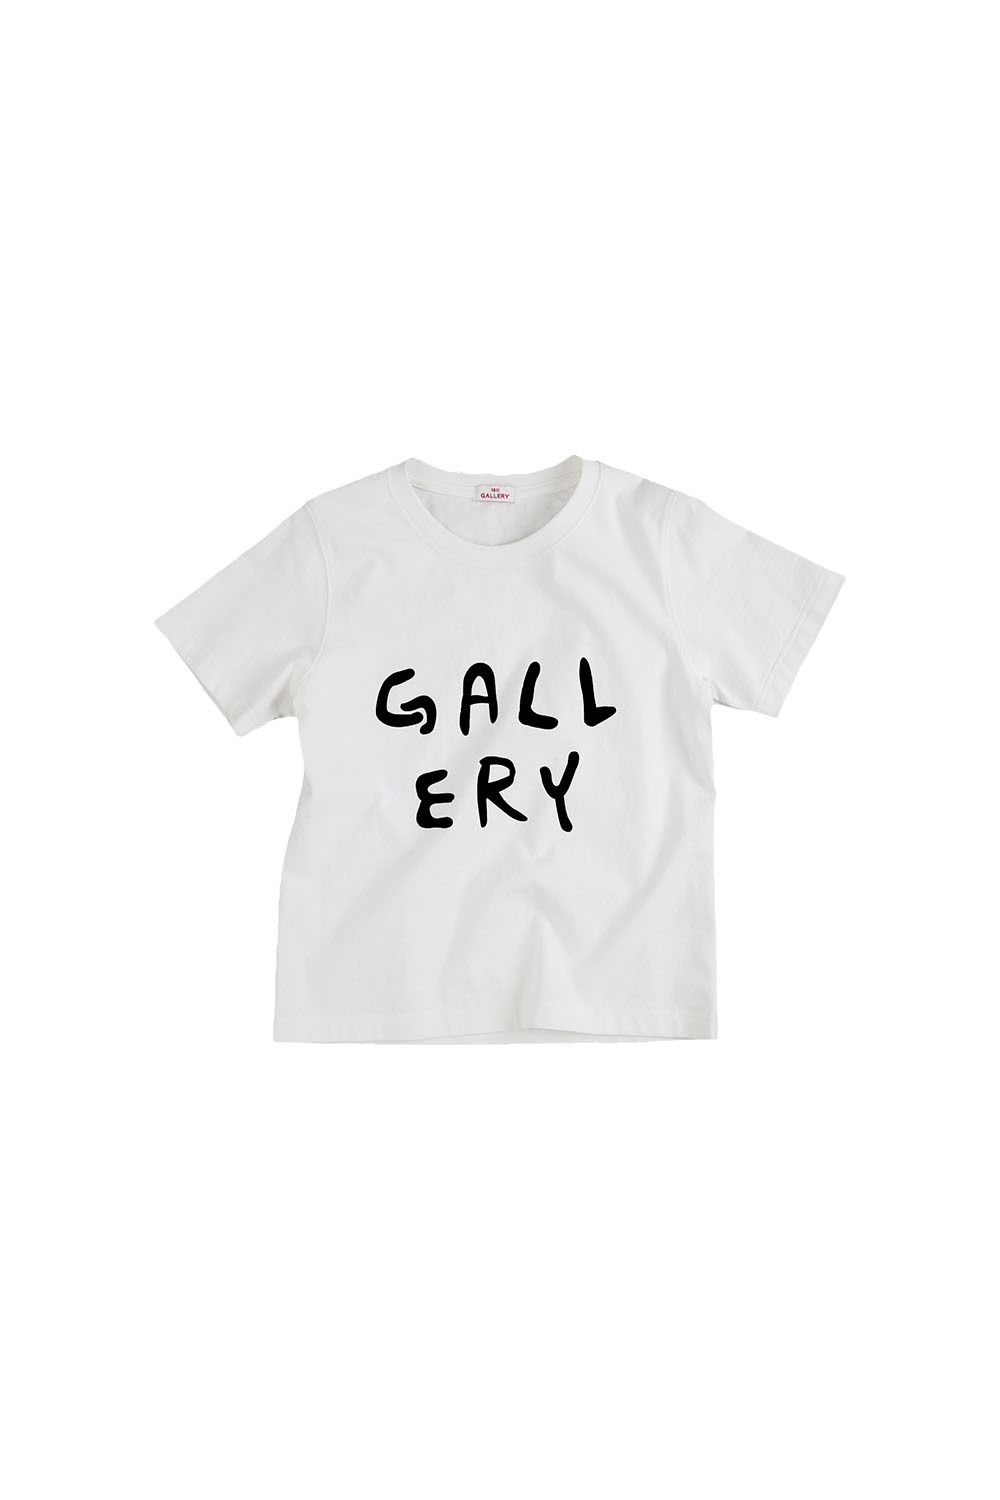 Gallery Baby T-shirt - White